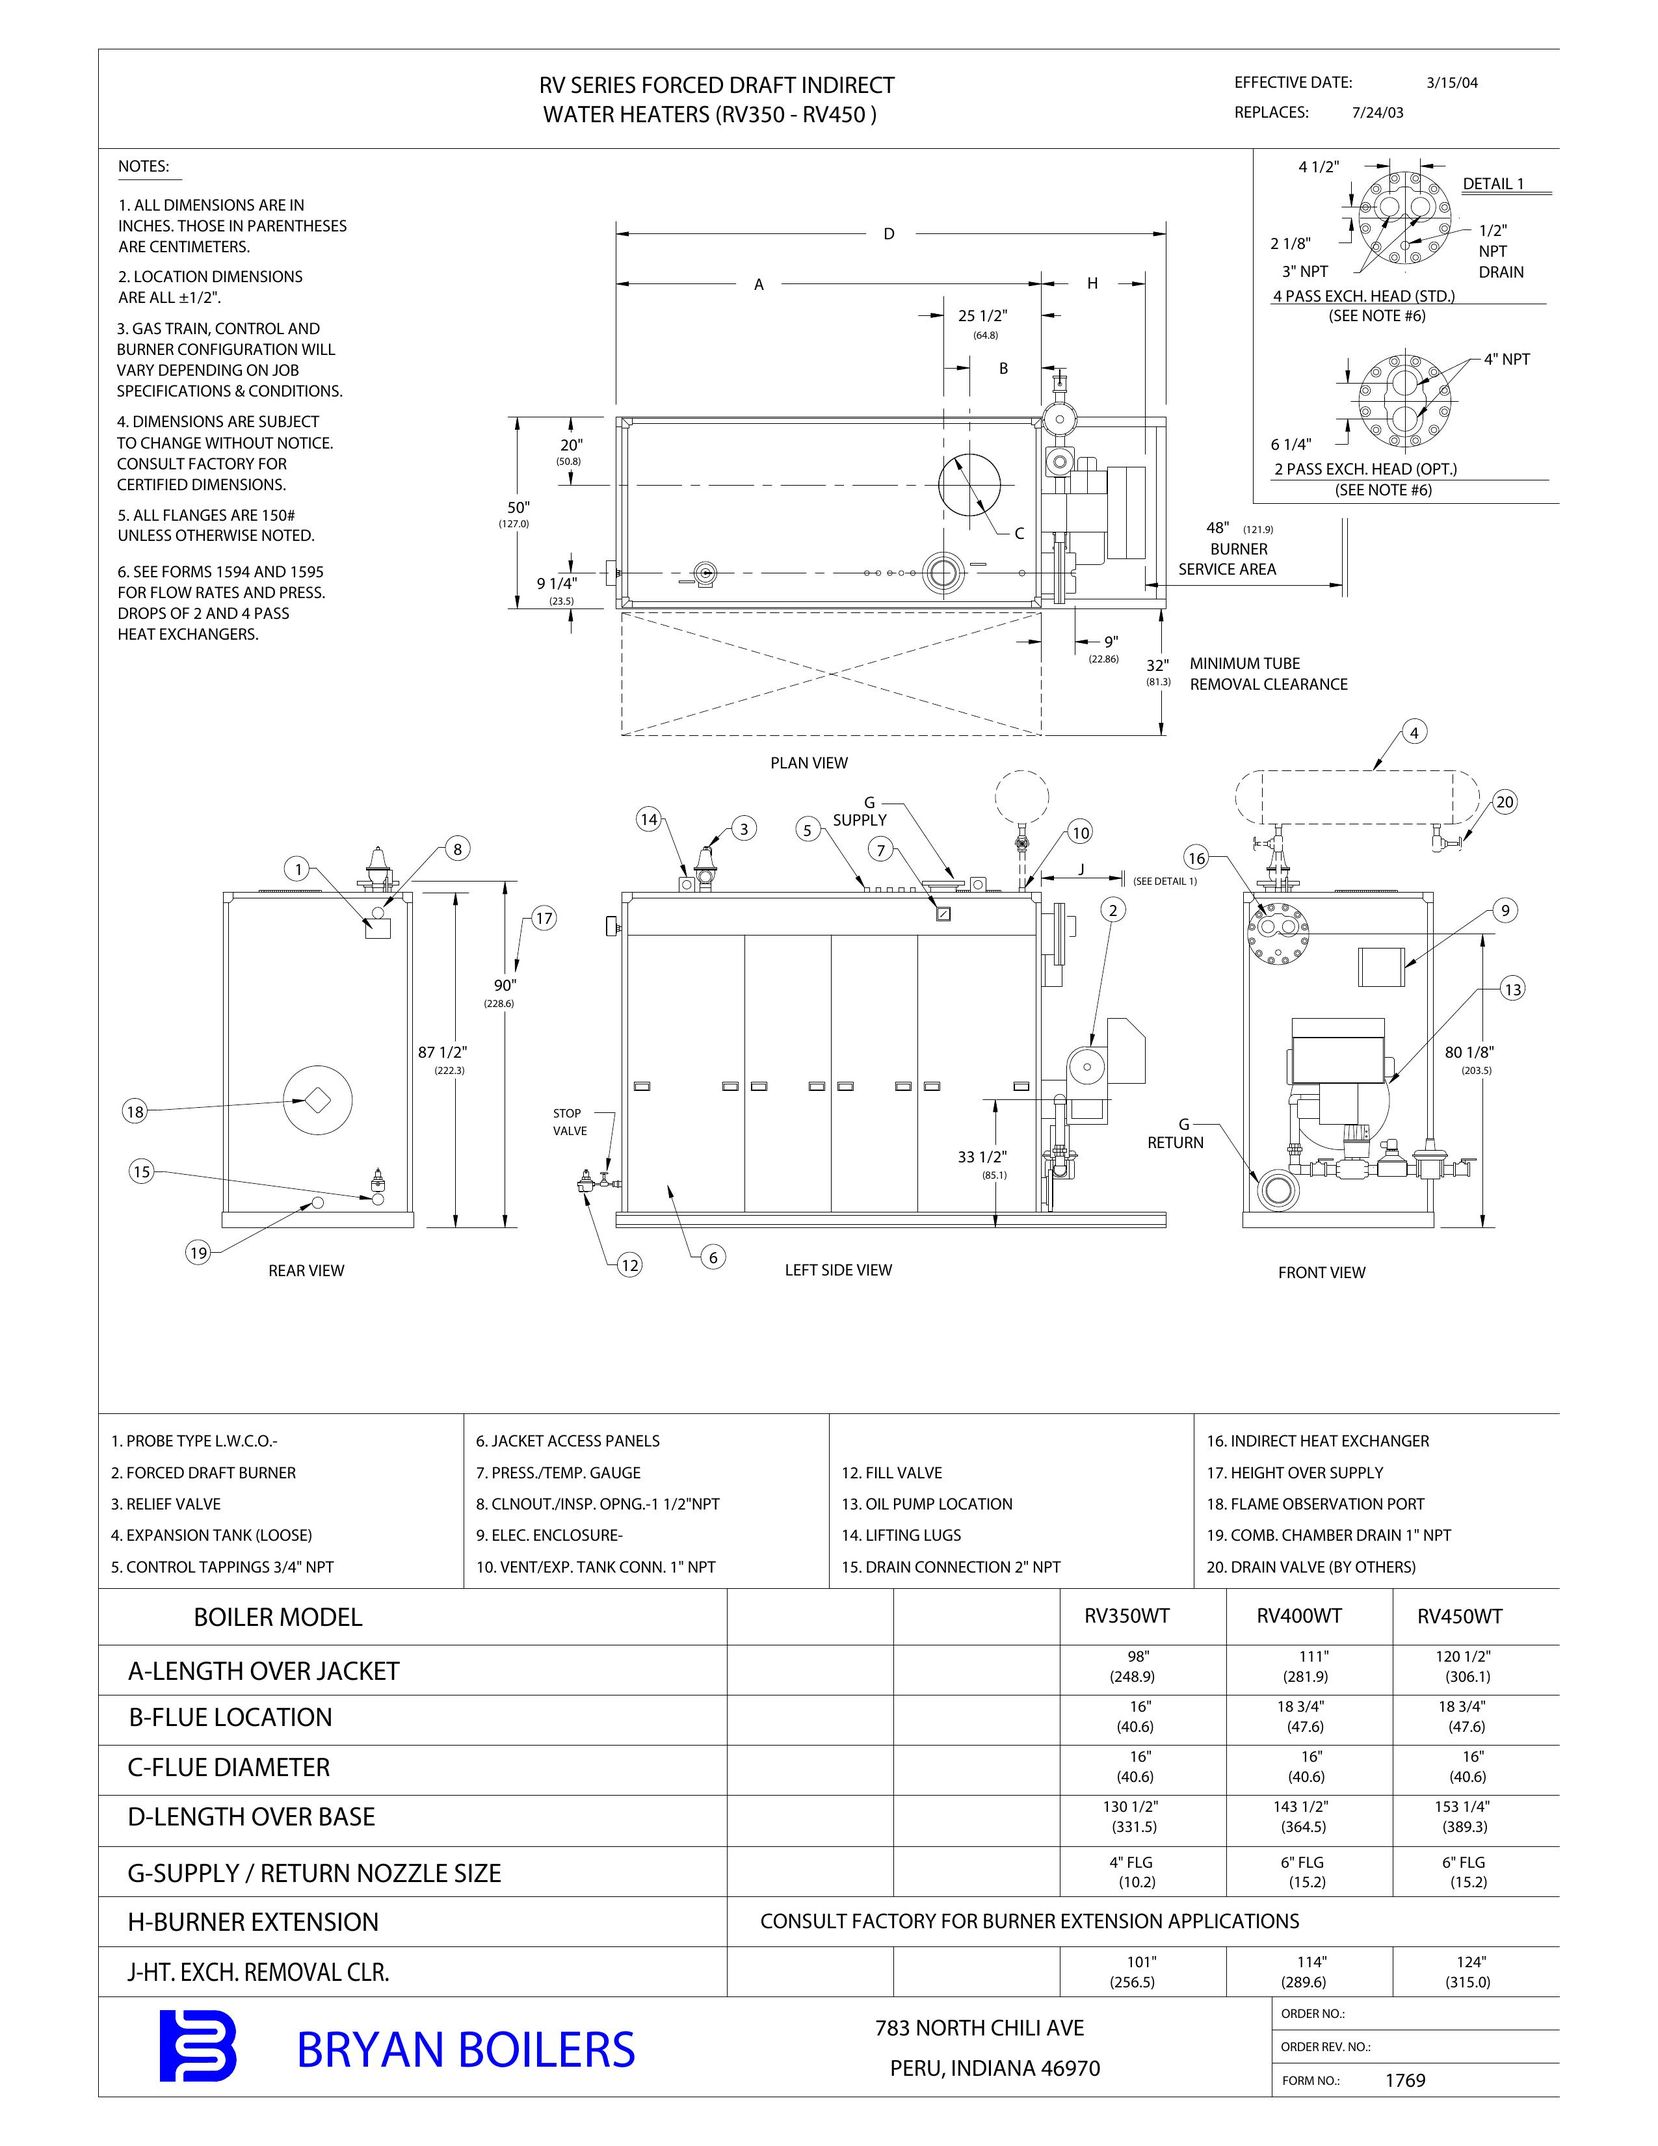 Bryan Boilers RV350 Water Heater User Manual